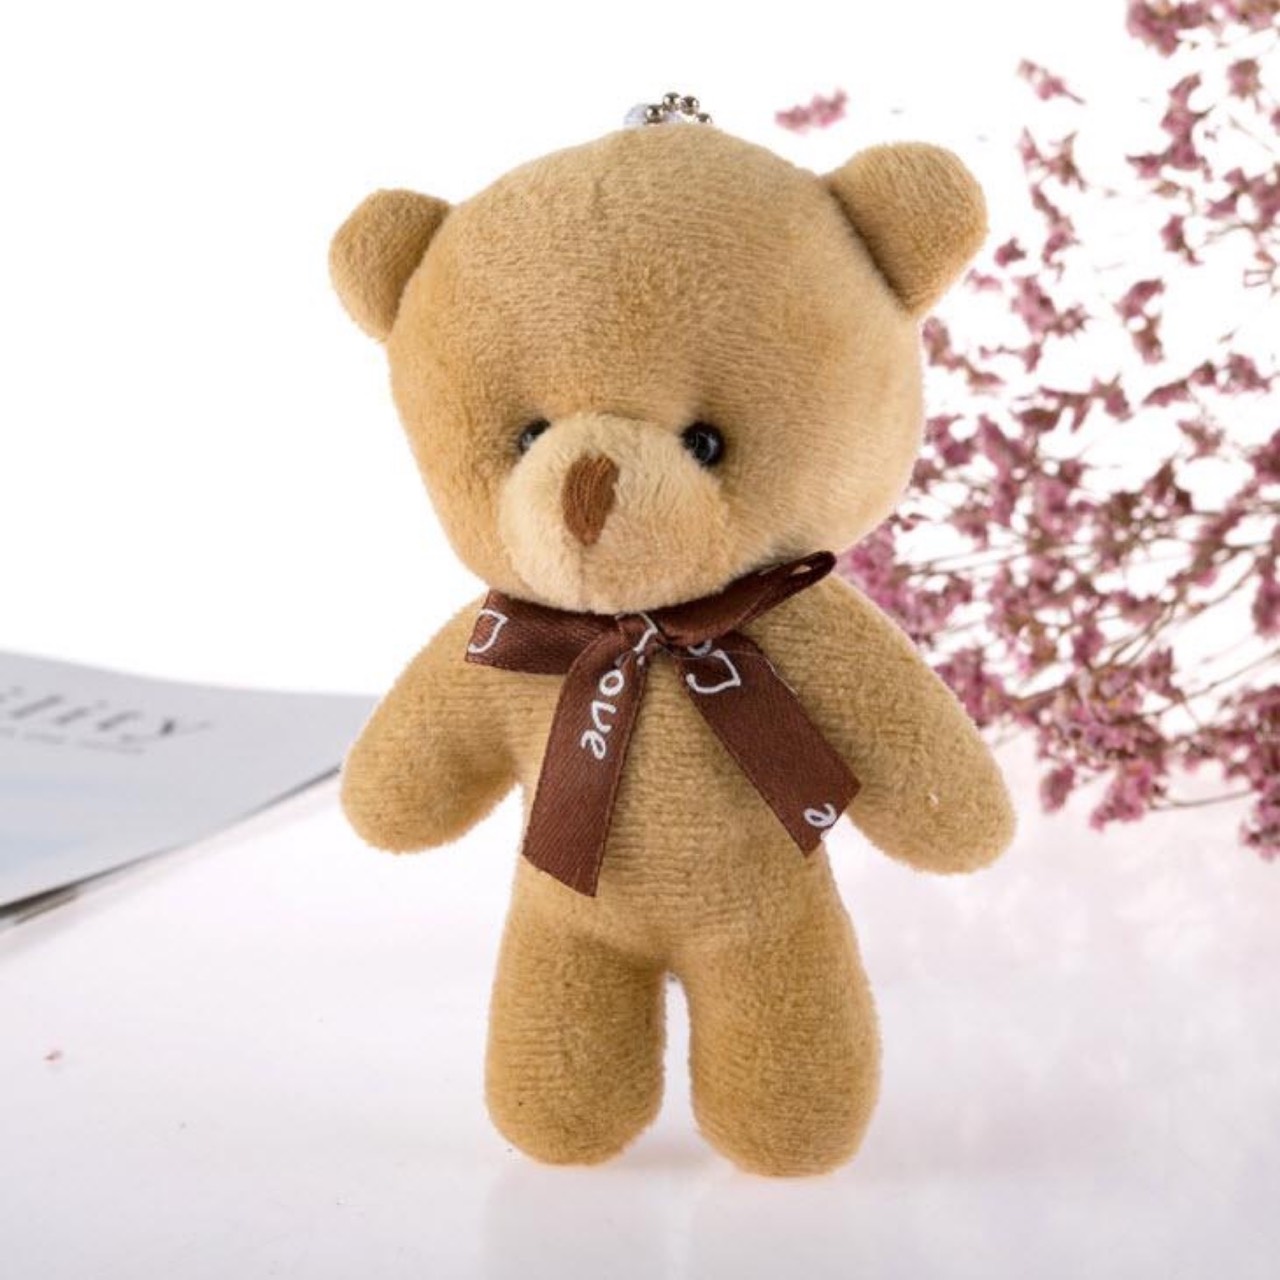 พวงกุญแจ ตุ๊กตาหมี พวงุญแจน่ารัก แฟชั่น 3D สีสันสดใส ห้อยกระเป๋า ห้อยโทรศัพท์ สไตล์เกาหลี